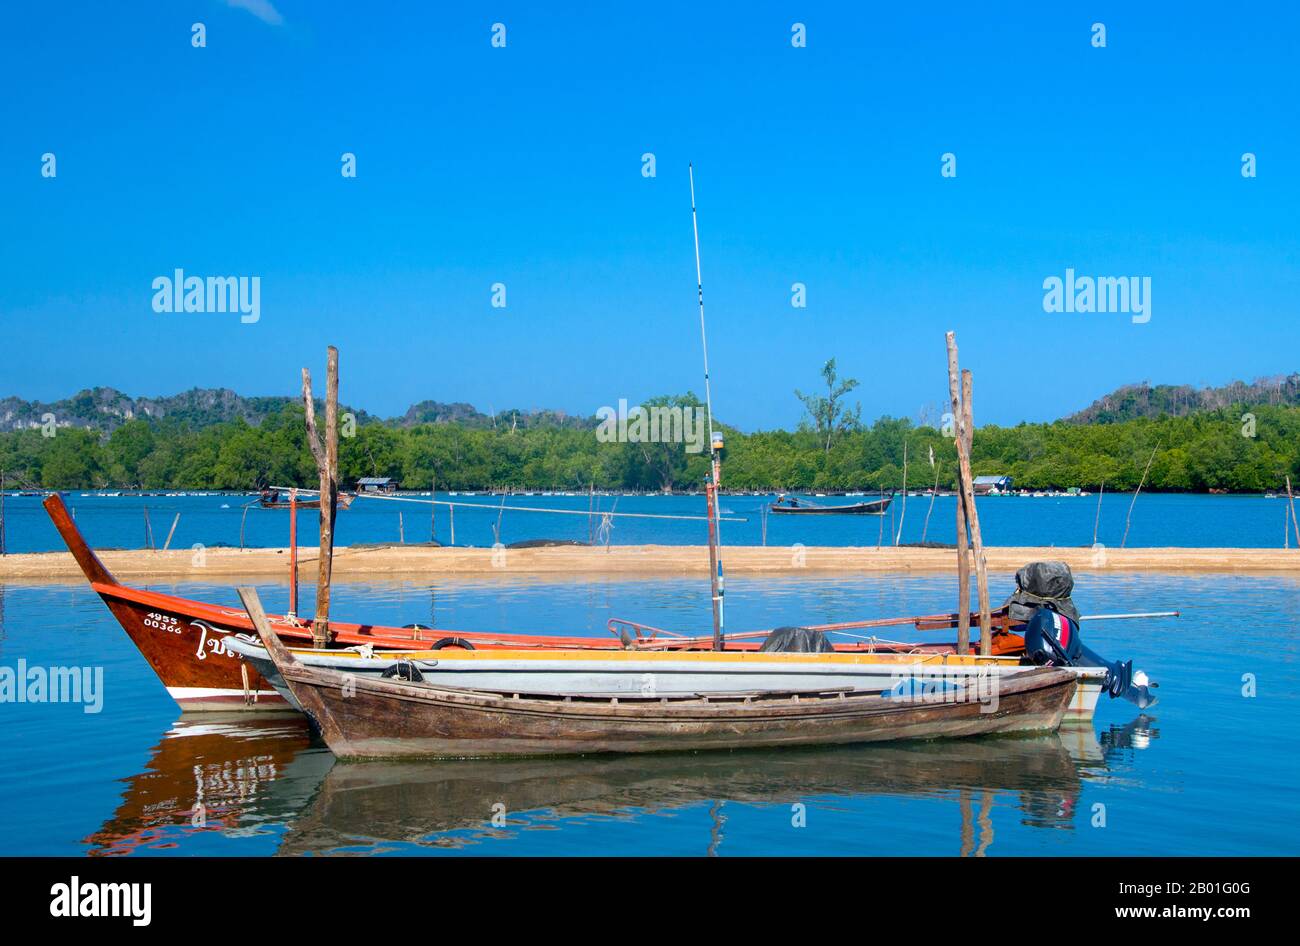 Tailandia: Barcos de pesca, Pak Bara. Pak Bara es una pequeña ciudad costera y pueblo de pescadores en el sur de Tailandia a unos 60km km (37 millas) al noroeste de la capital provincial de Satun. Sirve como punto de partida para visitar el Parque Nacional Marino Mu Ko Phetra y el Parque Nacional Marino Ko Tarutao. Foto de stock